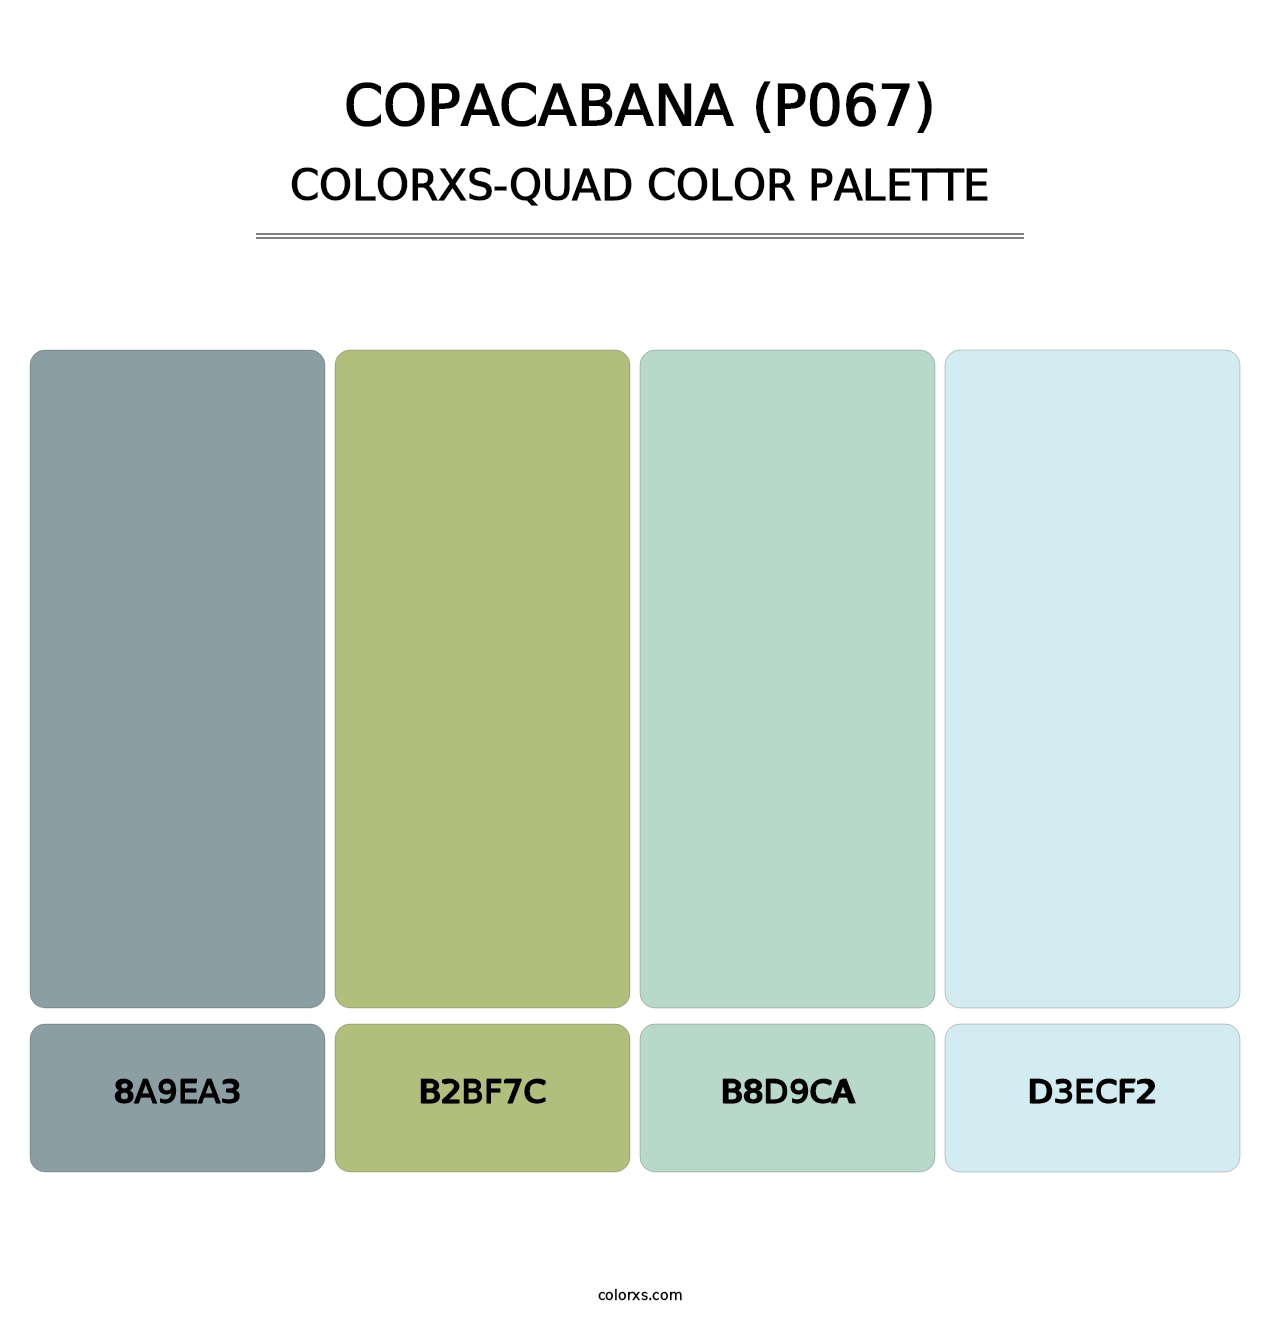 Copacabana (P067) - Colorxs Quad Palette